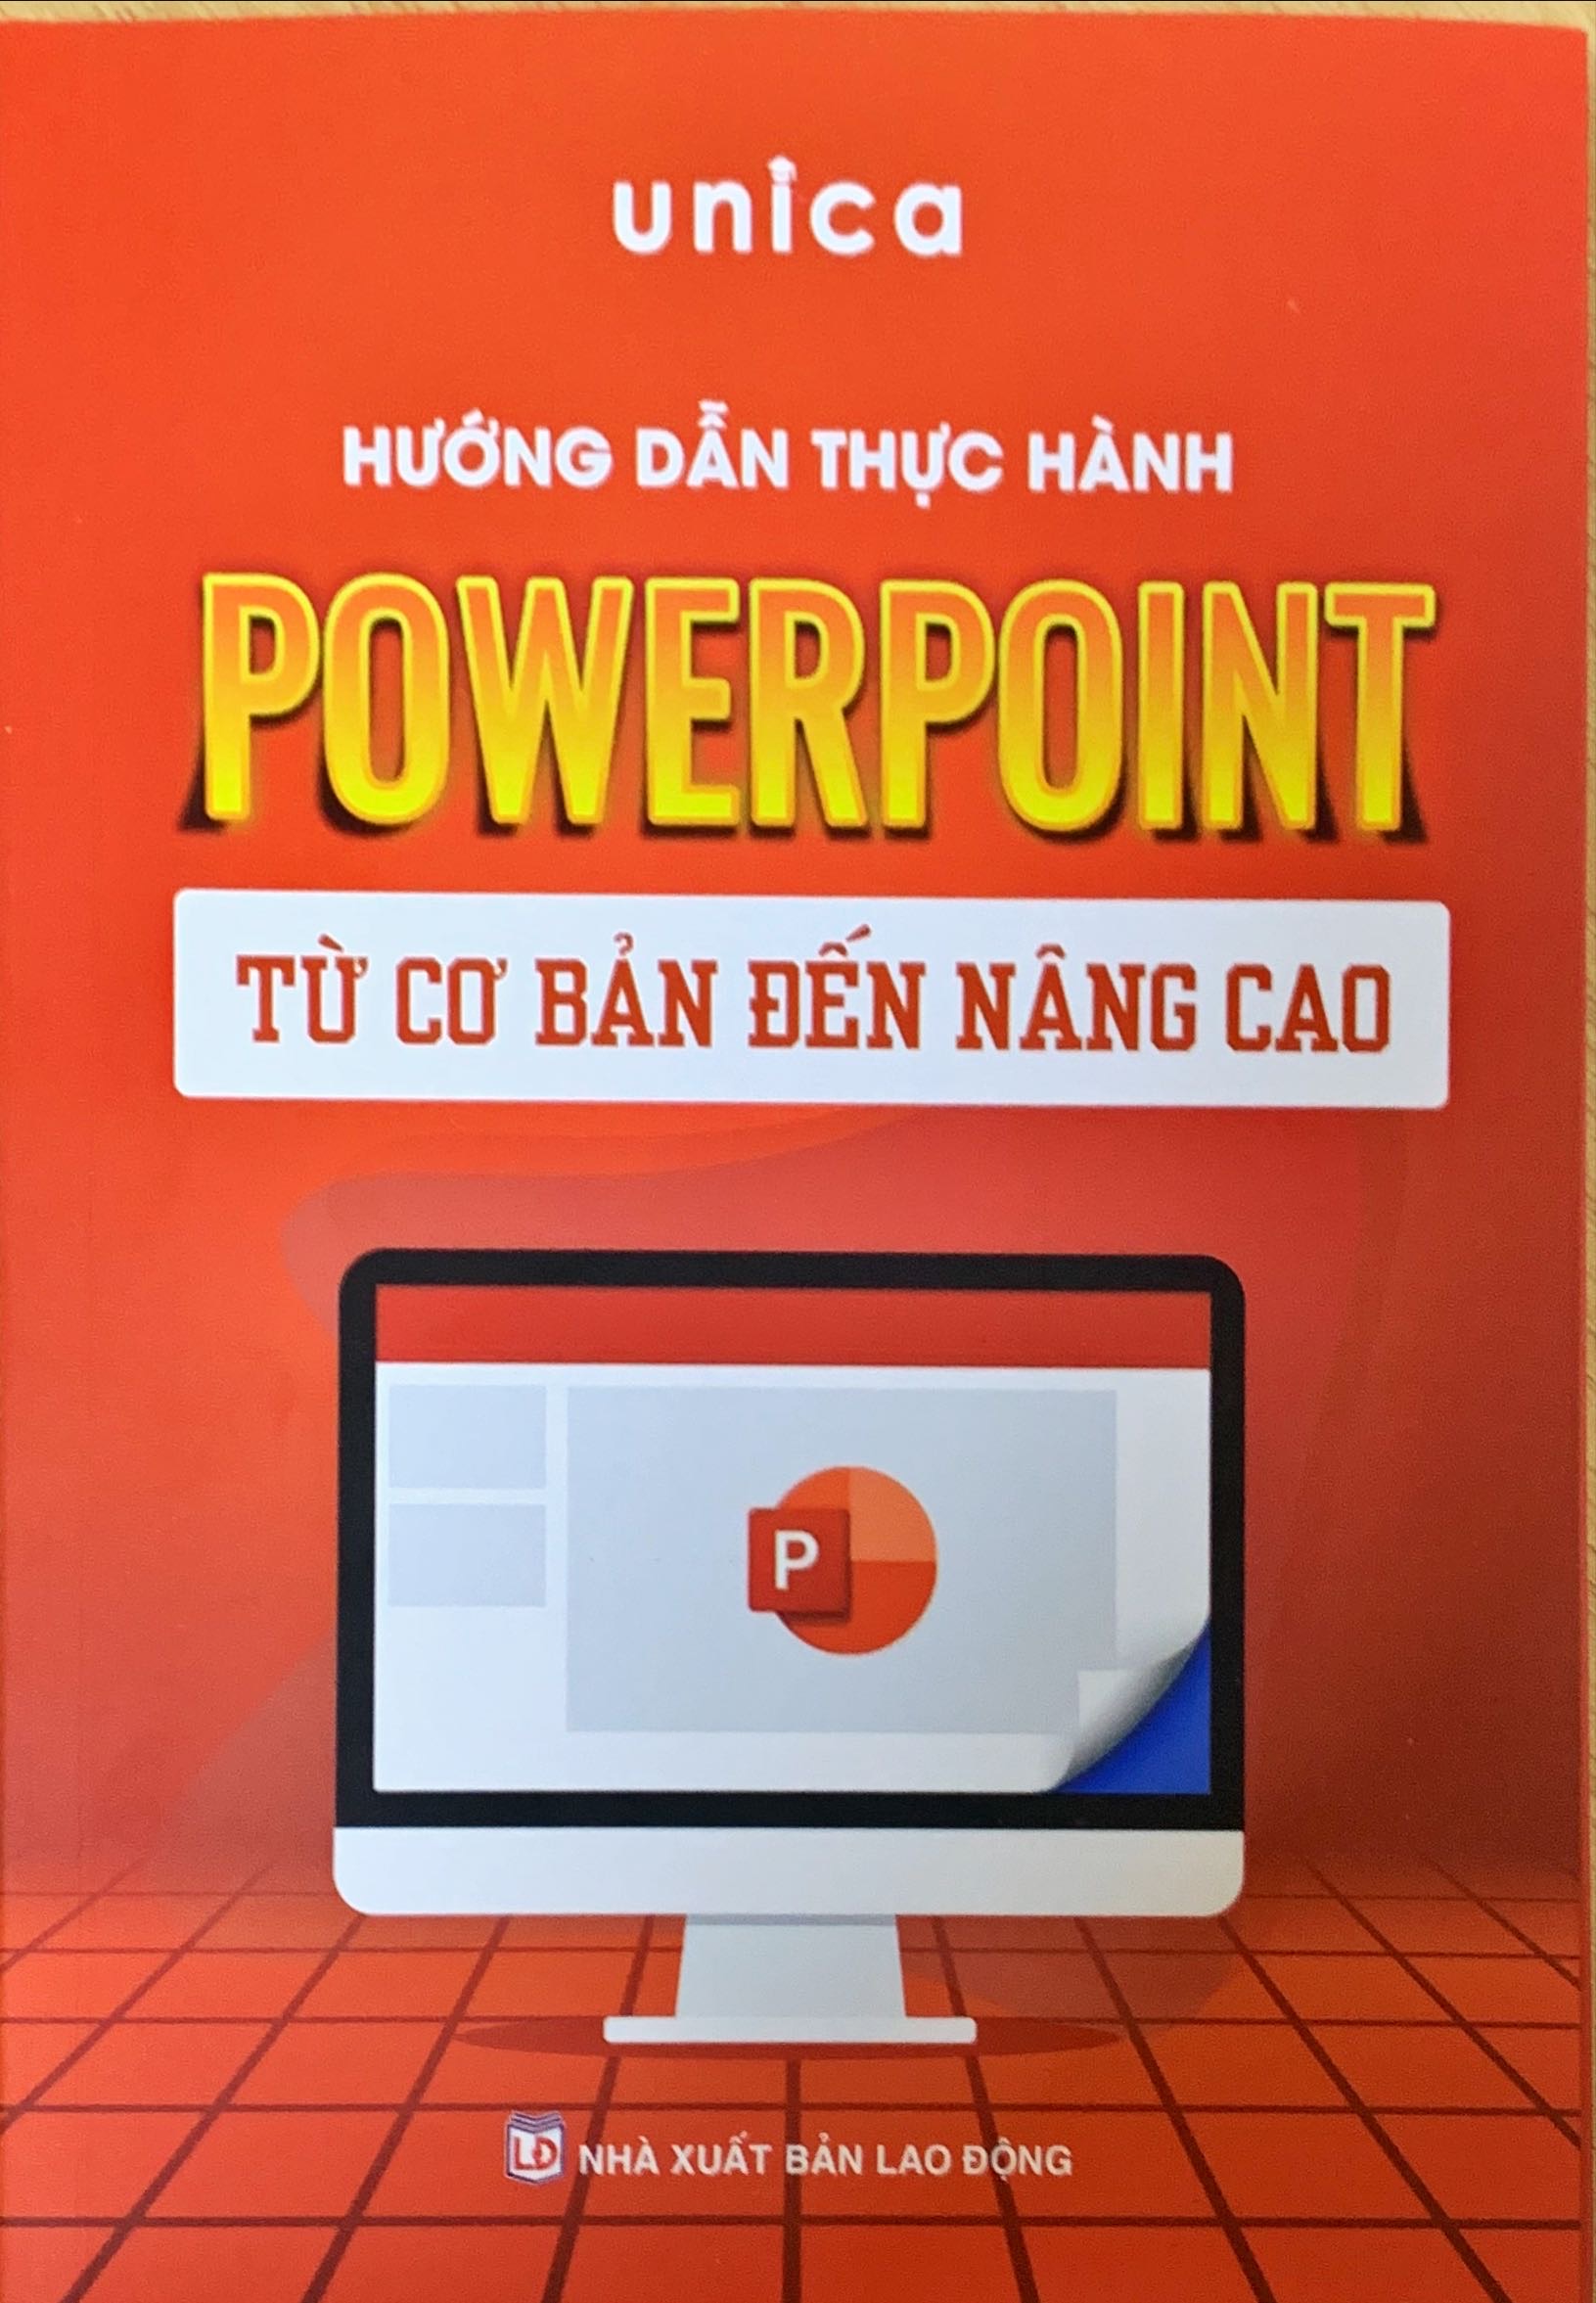 Sách PowerPoint Tin học văn phòng Unica, Hướng dẫn thực hành từ cơ bản đến nâng cao, in màu chi tiết, TẶNG video bài giảng